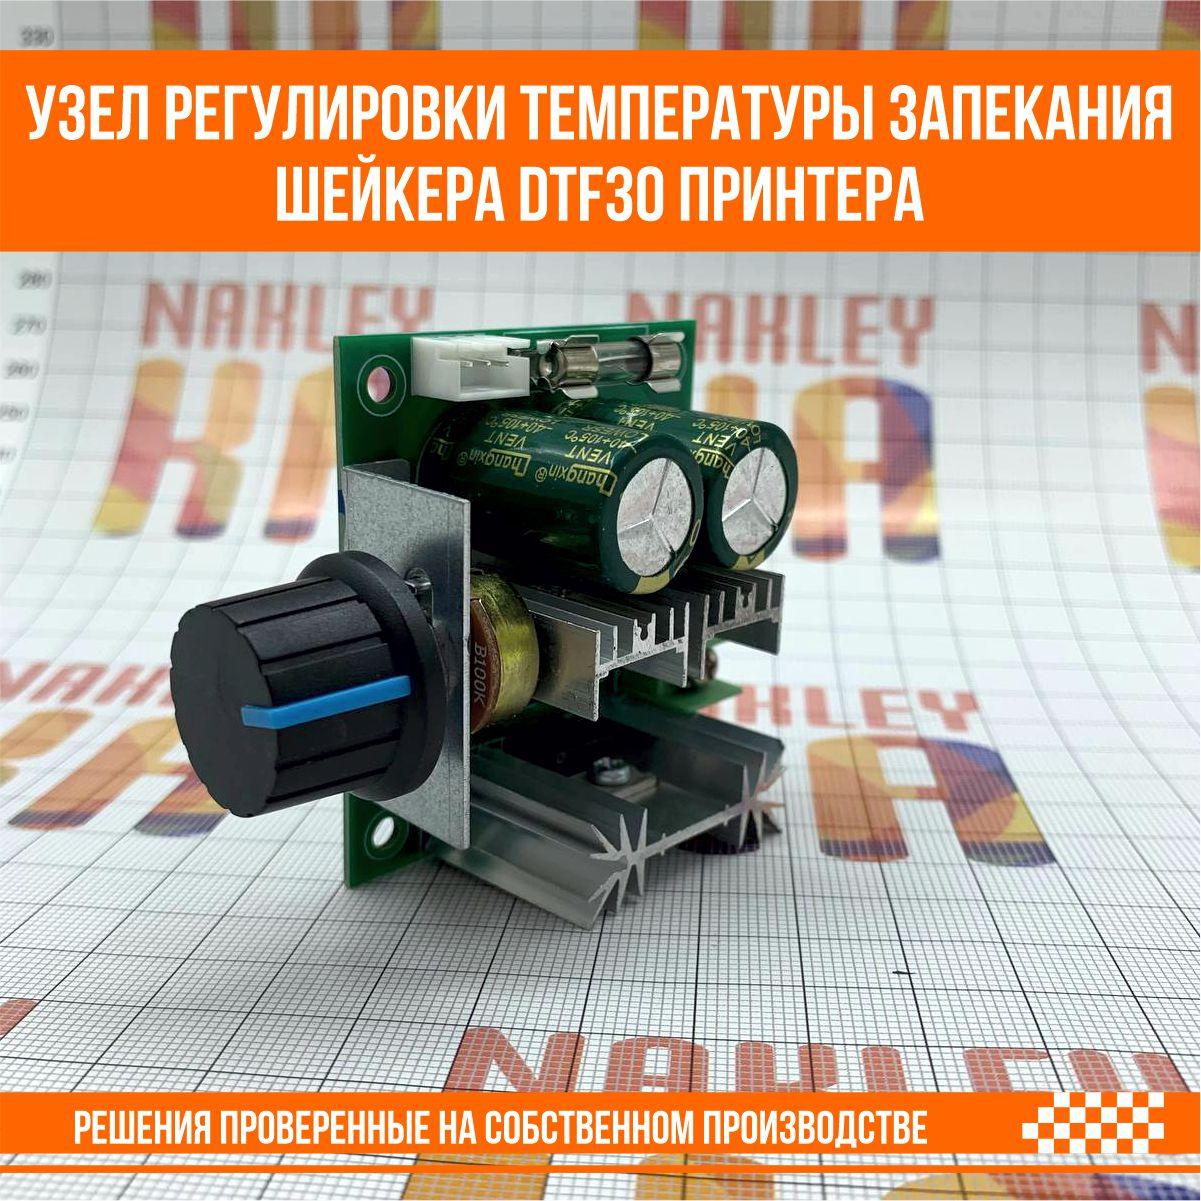 Узел регулировки температуры запекания шейкера DTF30 принтера